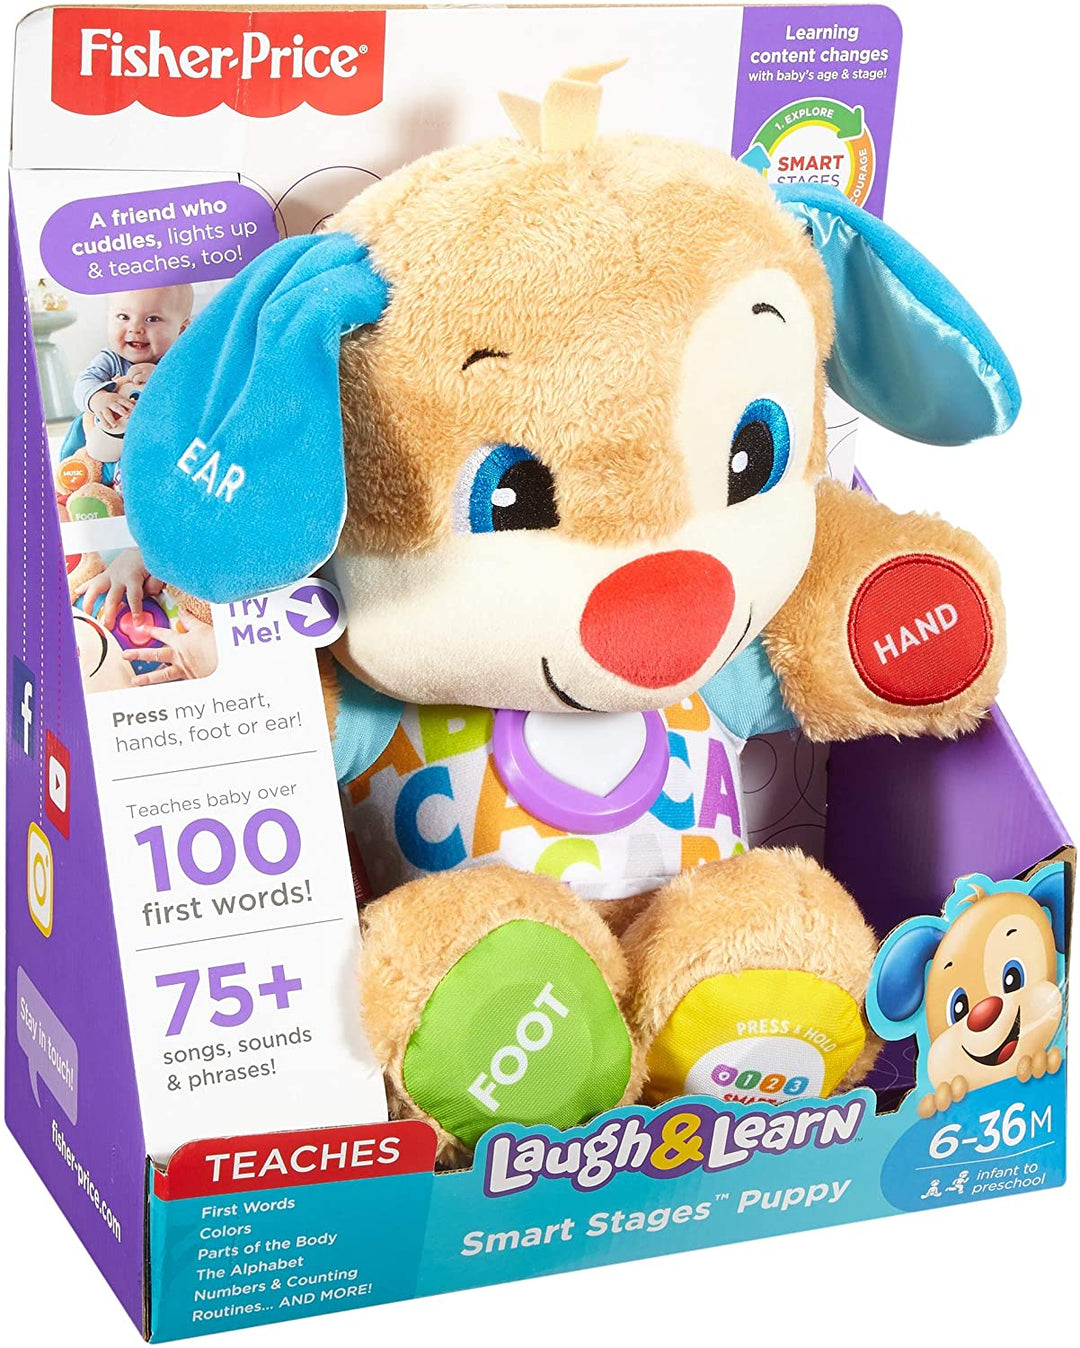 Fisher-Price FPM43 Smart Stages Puppy, Lachen und Lernen, weiches, pädagogisches elektronisches Kleinkind-Lernspielzeug mit Musik und Liedern, geeignet für Kinder ab 6 Monaten